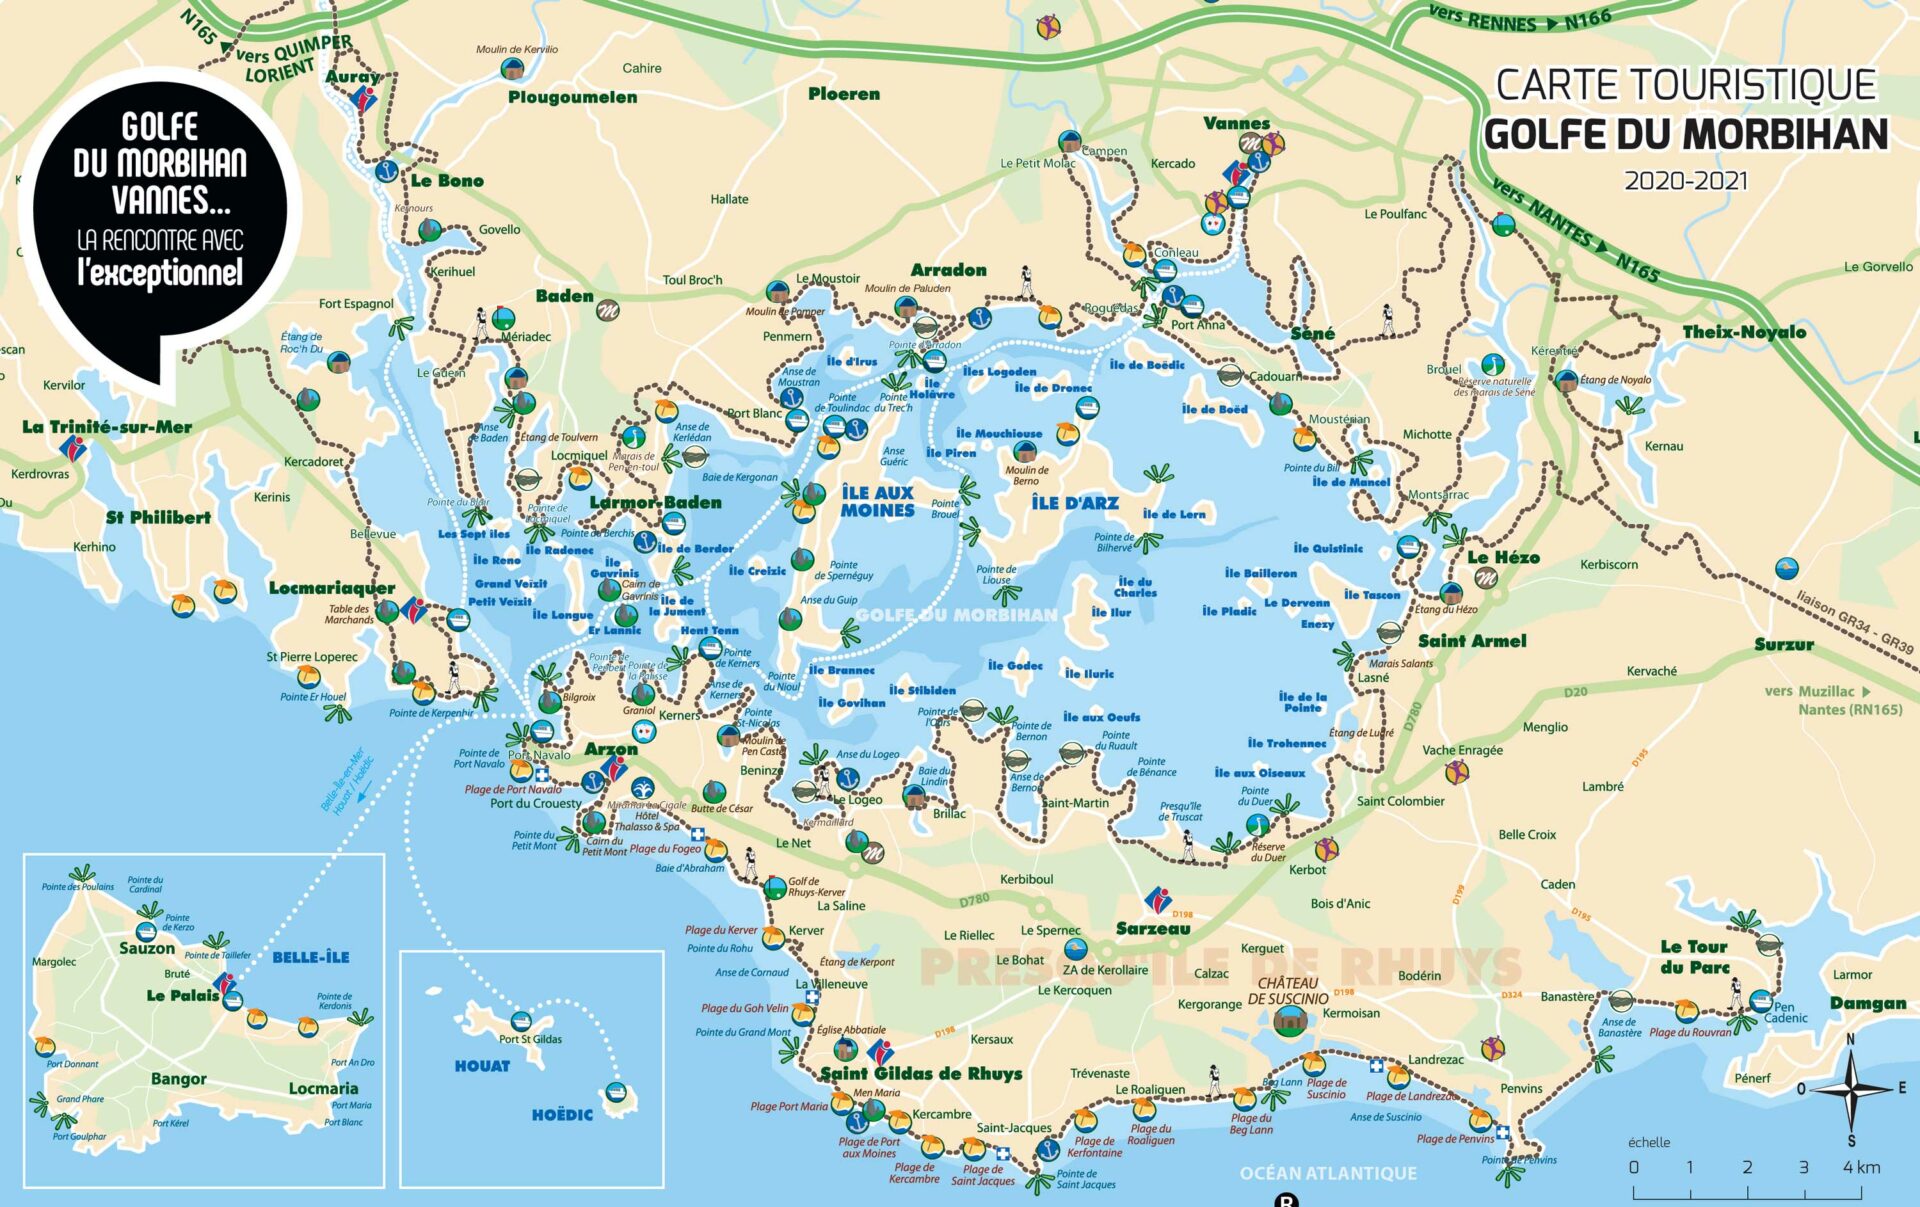 Carte touristique Golfe du Morbihan